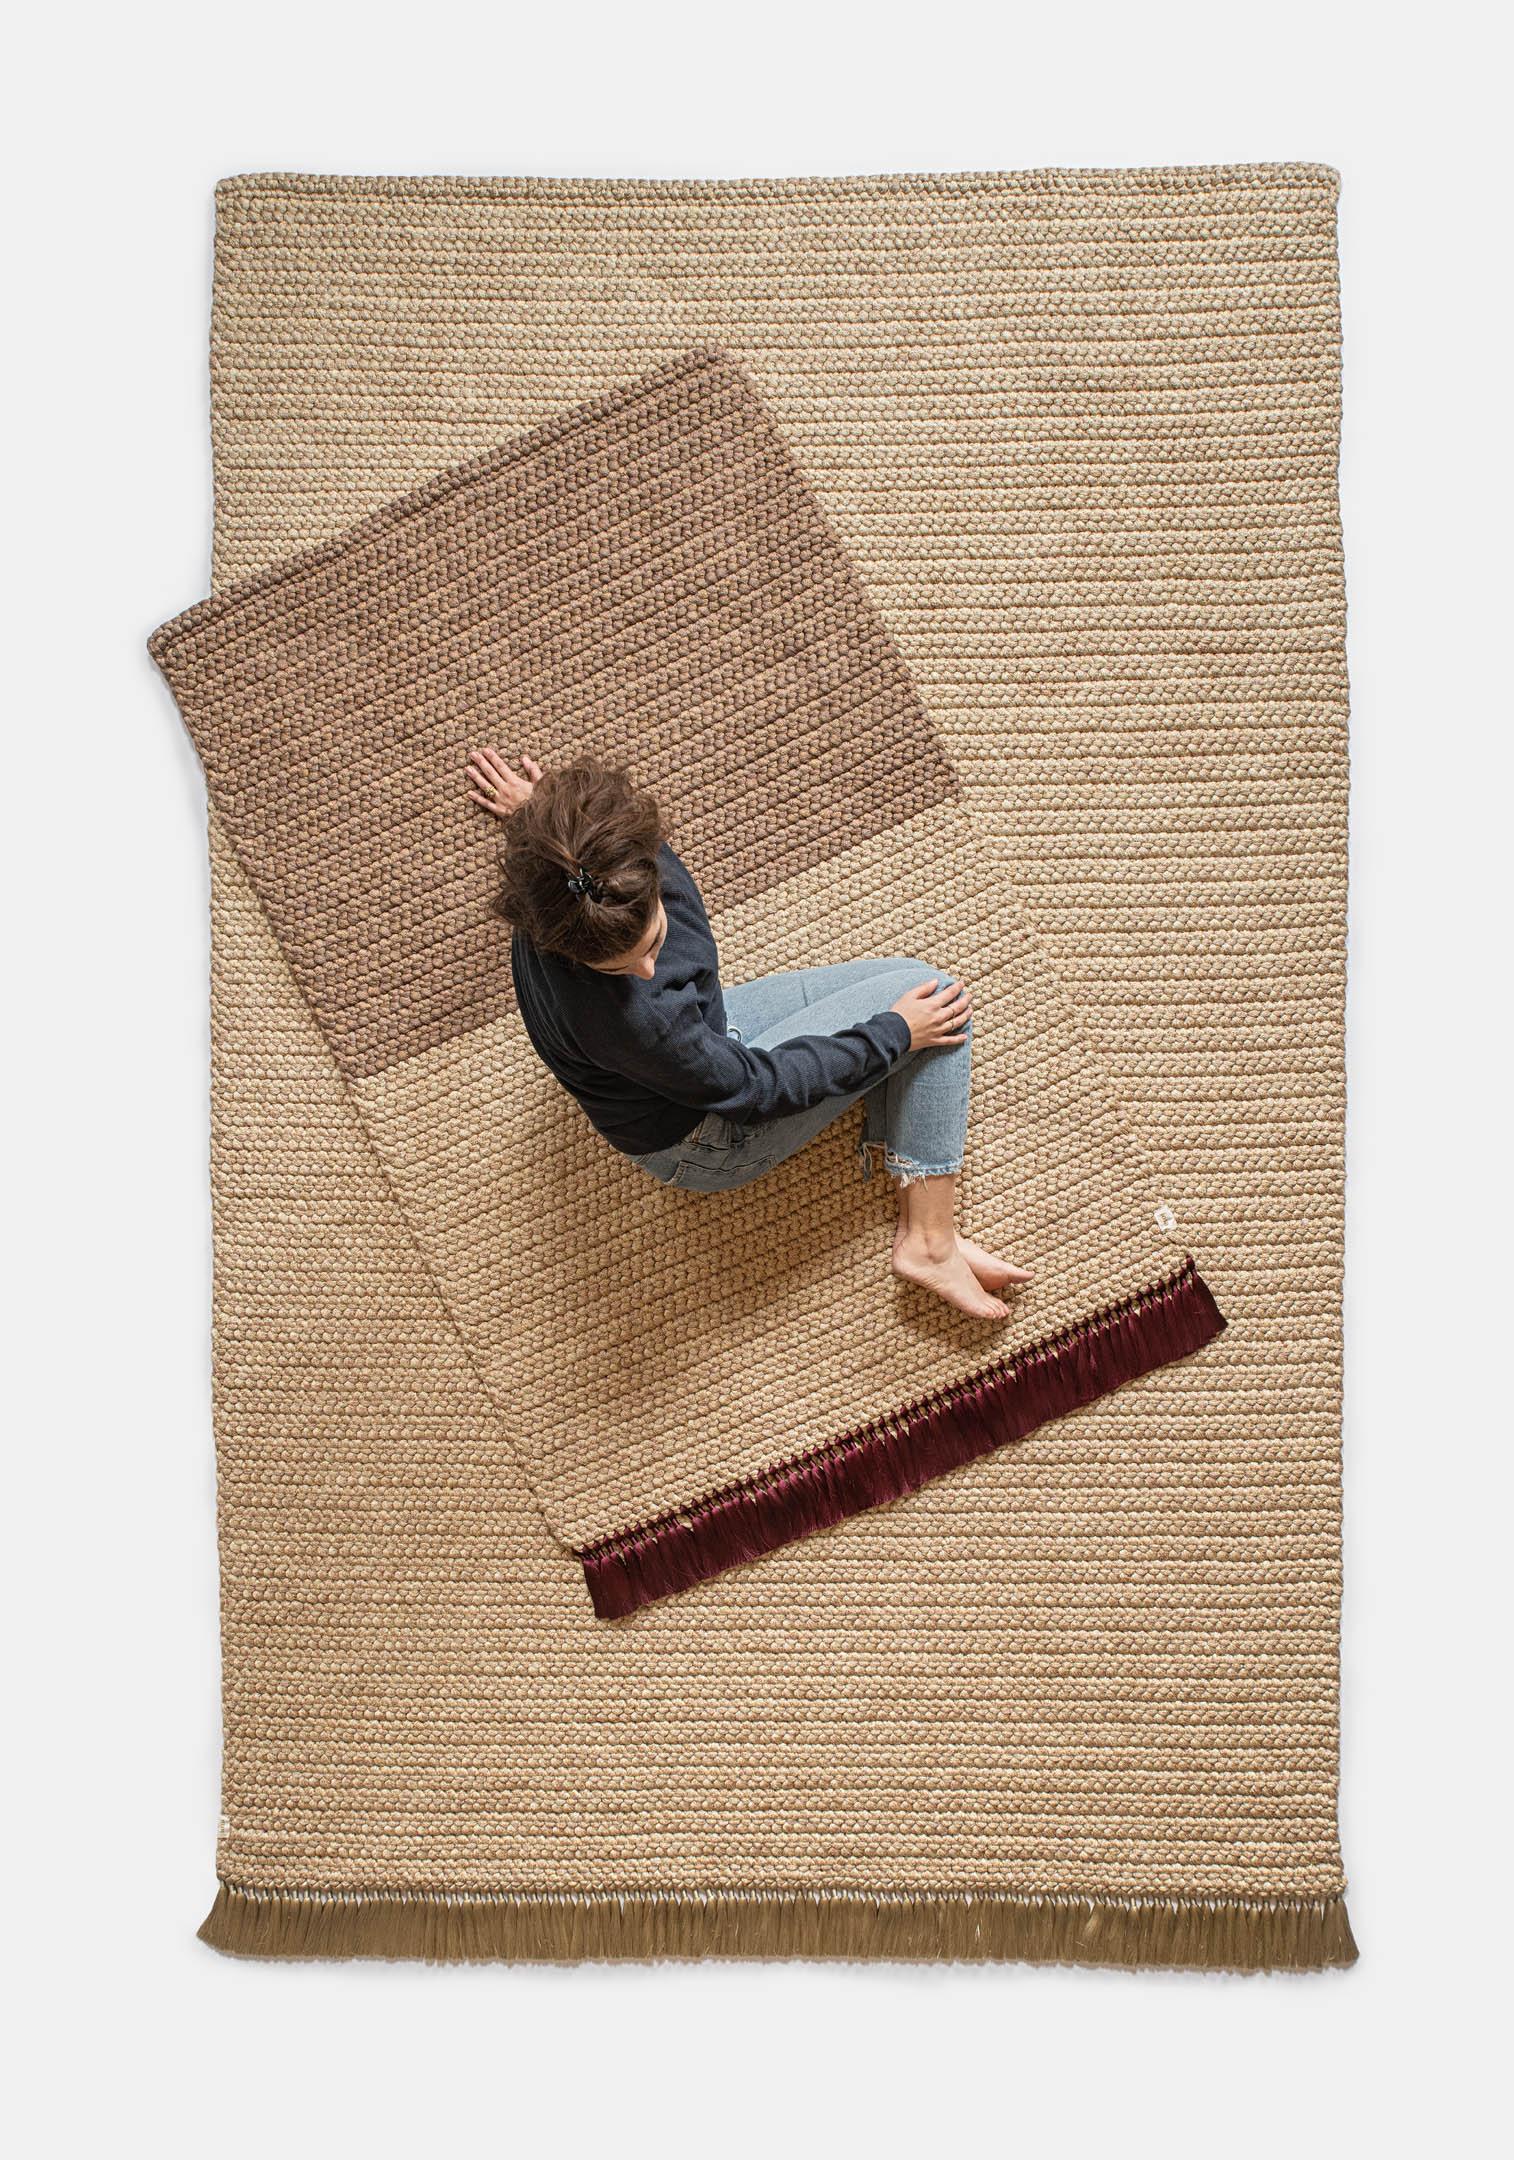 Zweifarbiger Teppich in Ingwer 
iota-Teppiche sind dick, weich, handgestrickt und luxuriös, dreimal dicker als ein Standardteppich. Die zweifarbigen, mittelgroßen Teppiche erzeugen einen subtilen Farbverlauf, der jeden Raum erhellt. Sie eignen sich